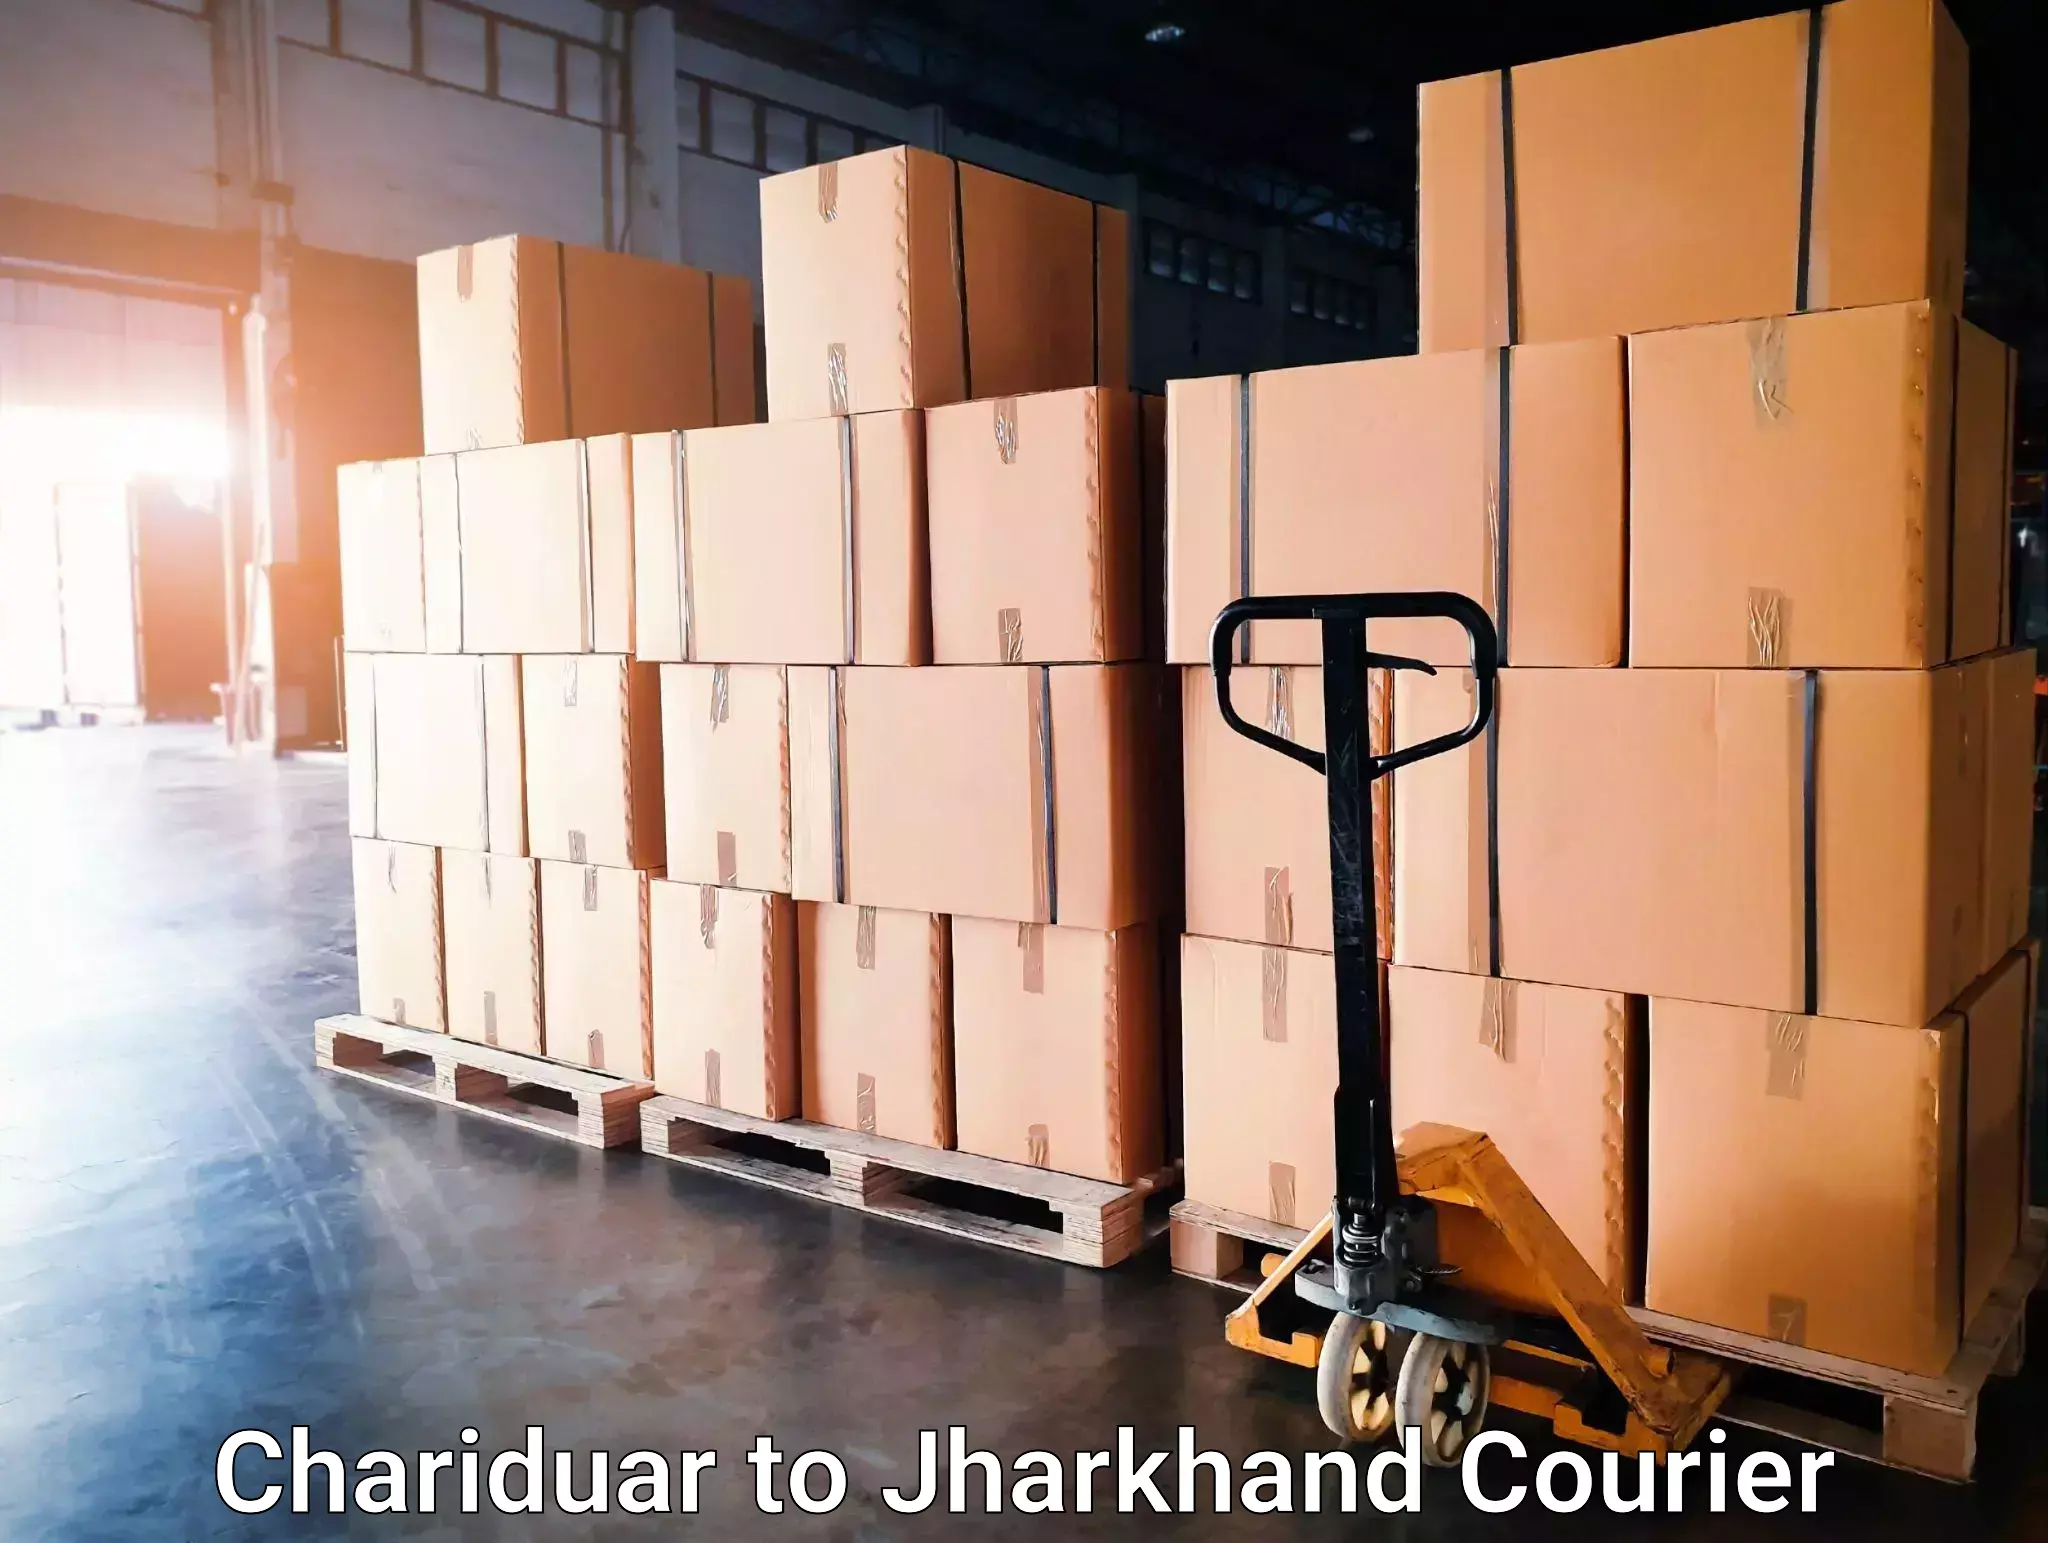 Urgent courier needs Chariduar to Poreyahat